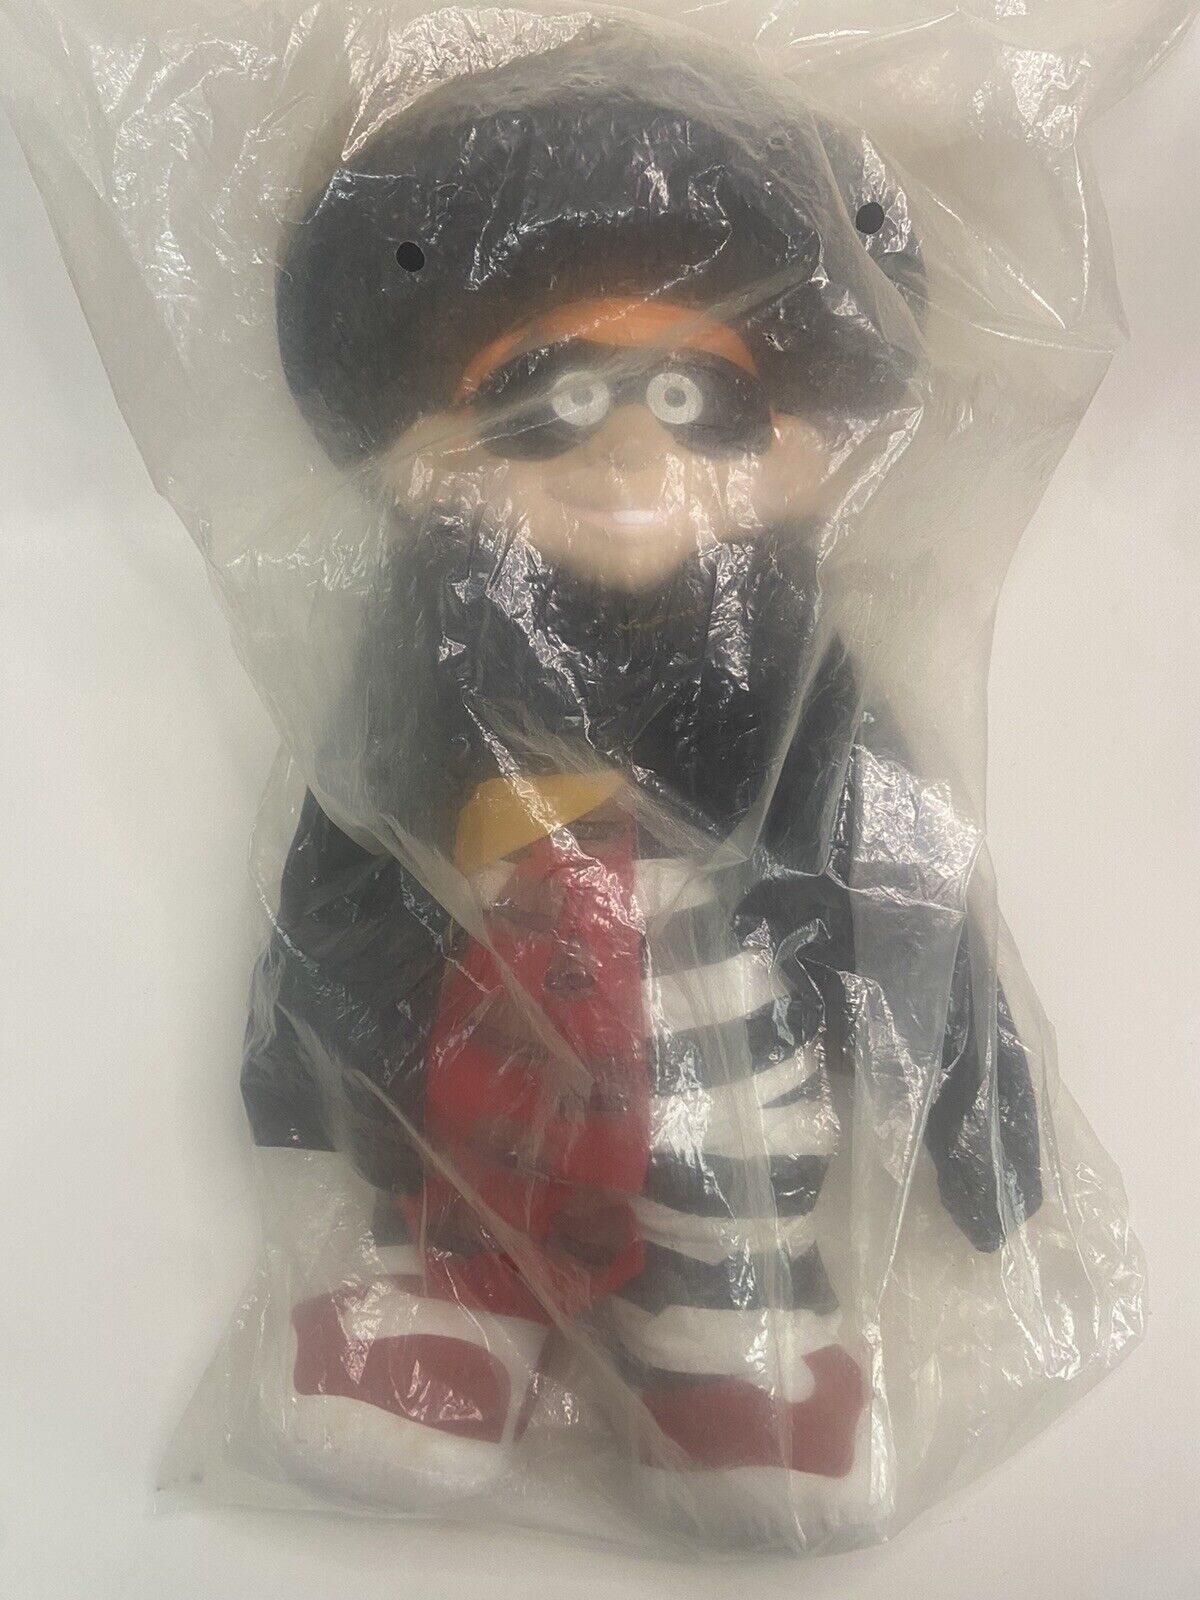 1999 McDonald’s “Hamburglar” Plush Doll NOS Sealed Rare